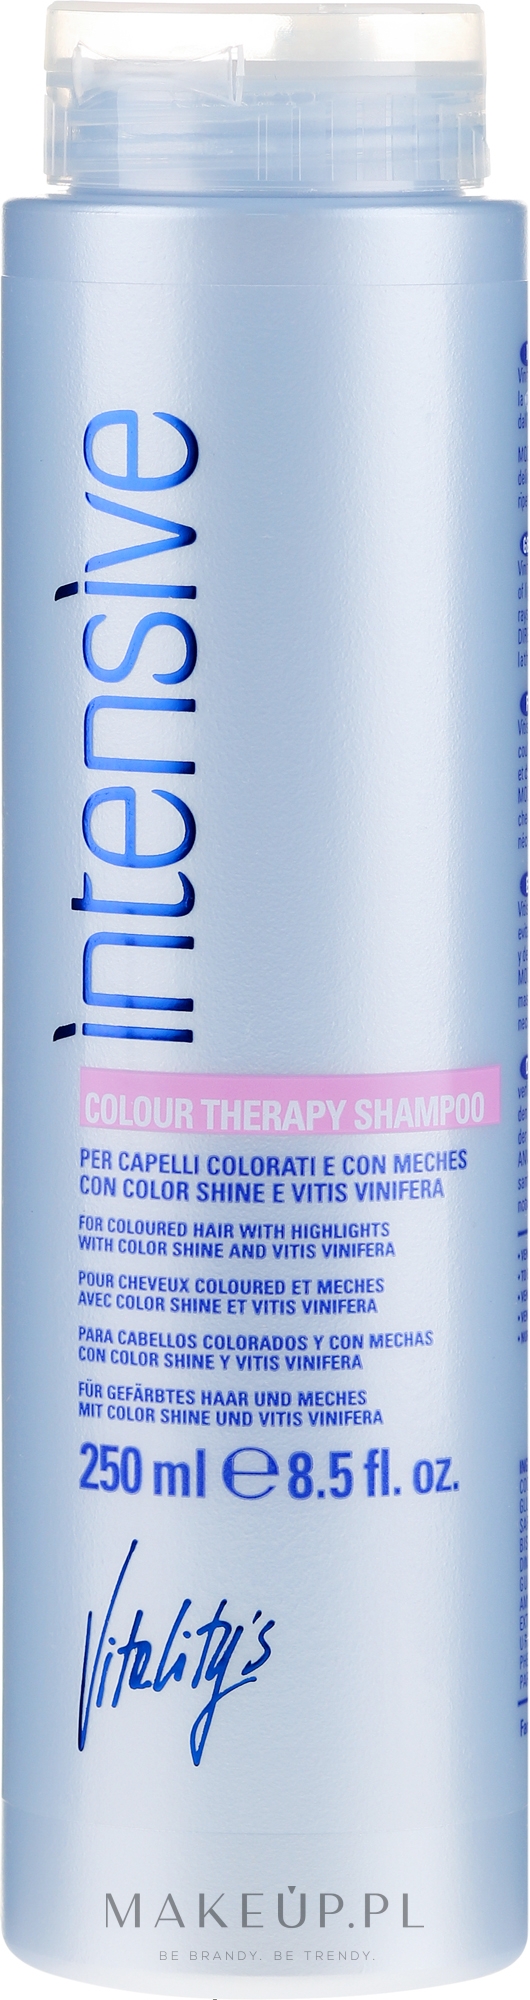 Szampon do włosów farbowanych - Vitality's Intensive Color Therapy Shampoo — Zdjęcie 250 ml